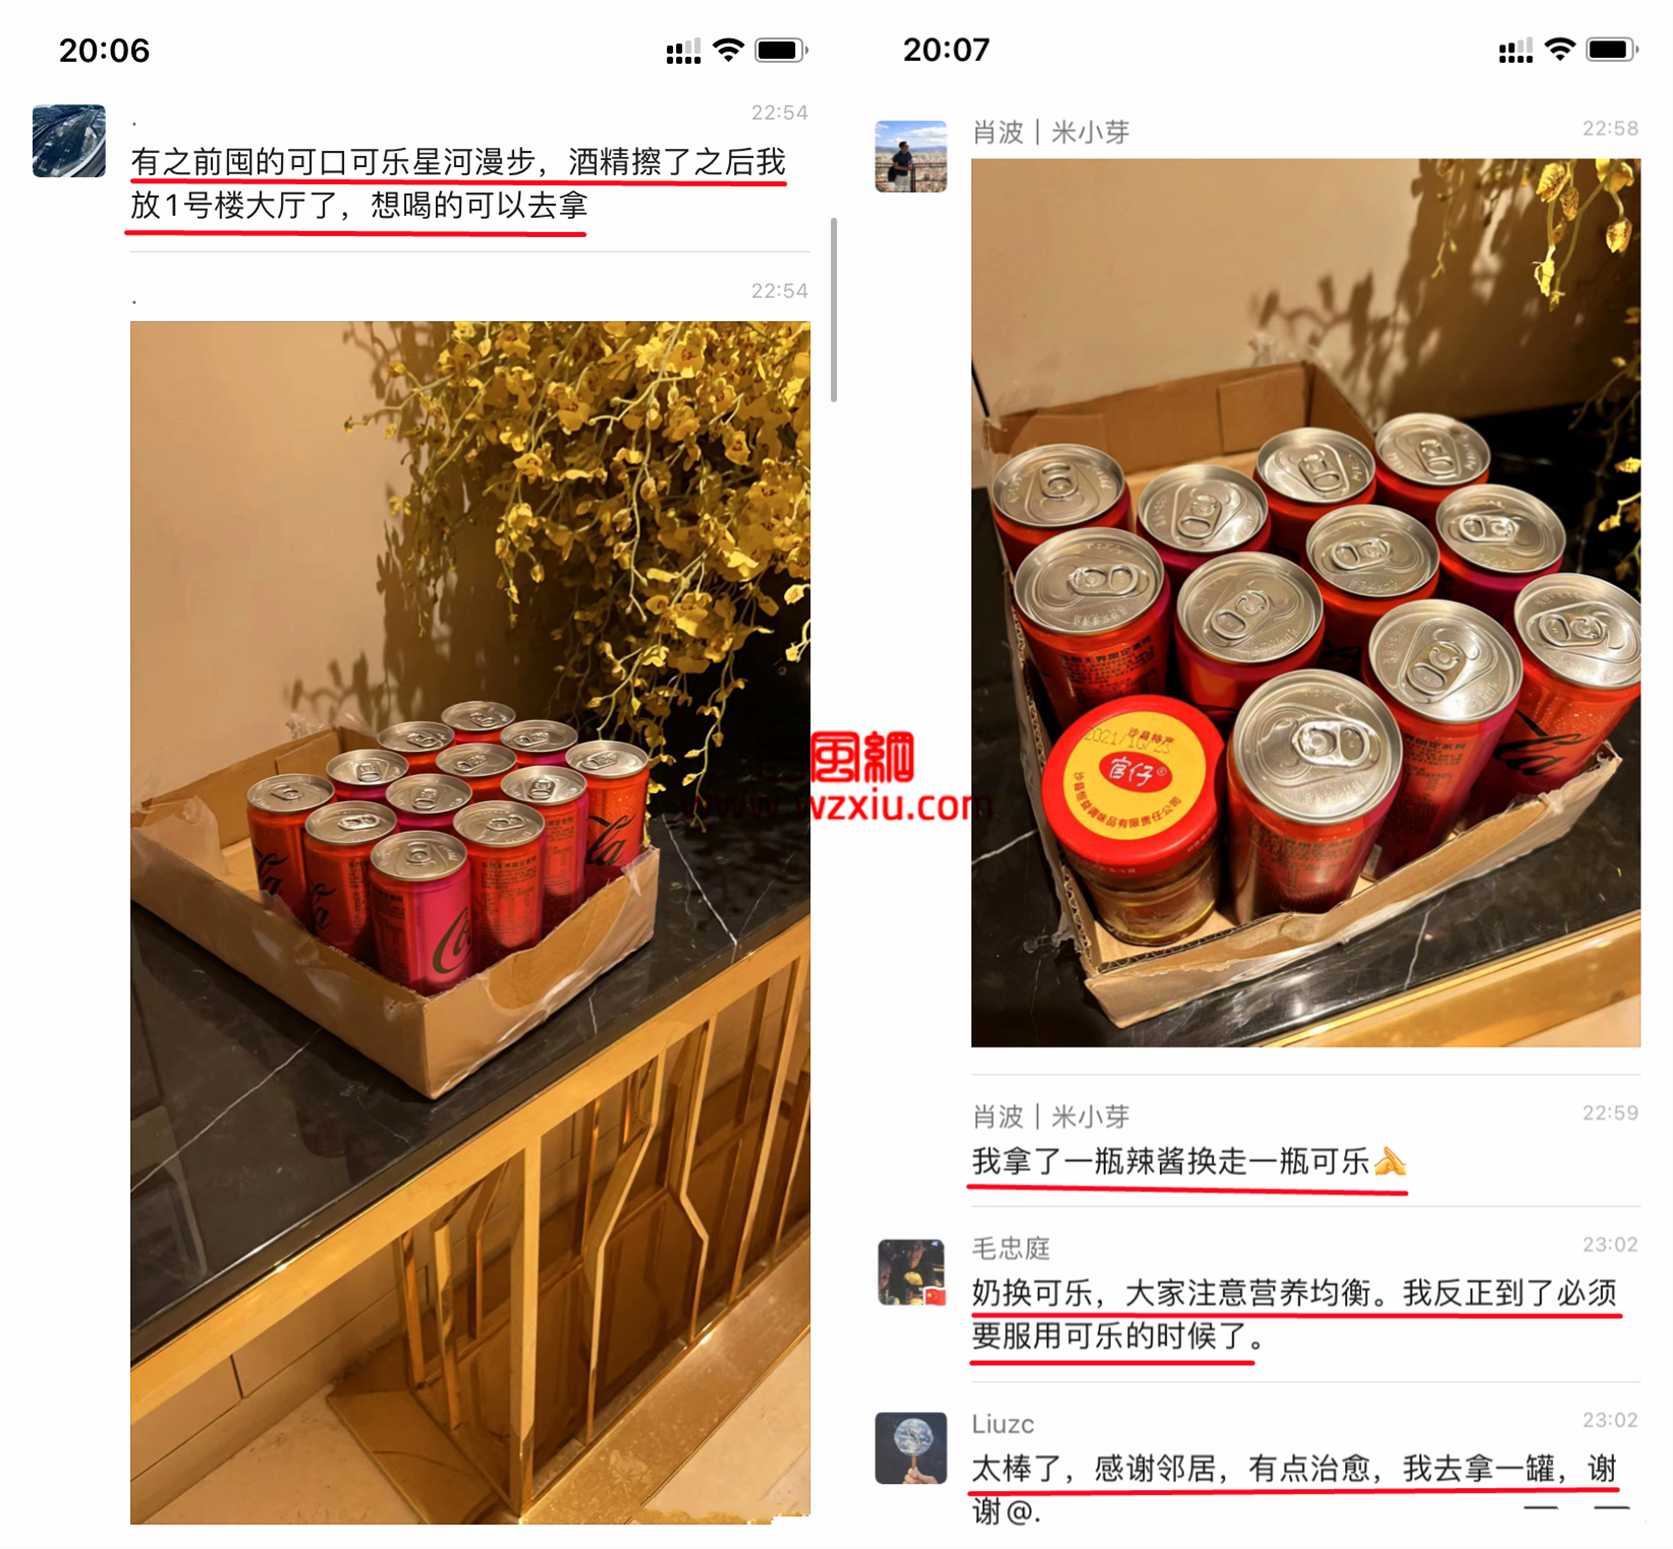 上海小区12罐可乐换出一个小超市?邻里互助抗疫暖人心！